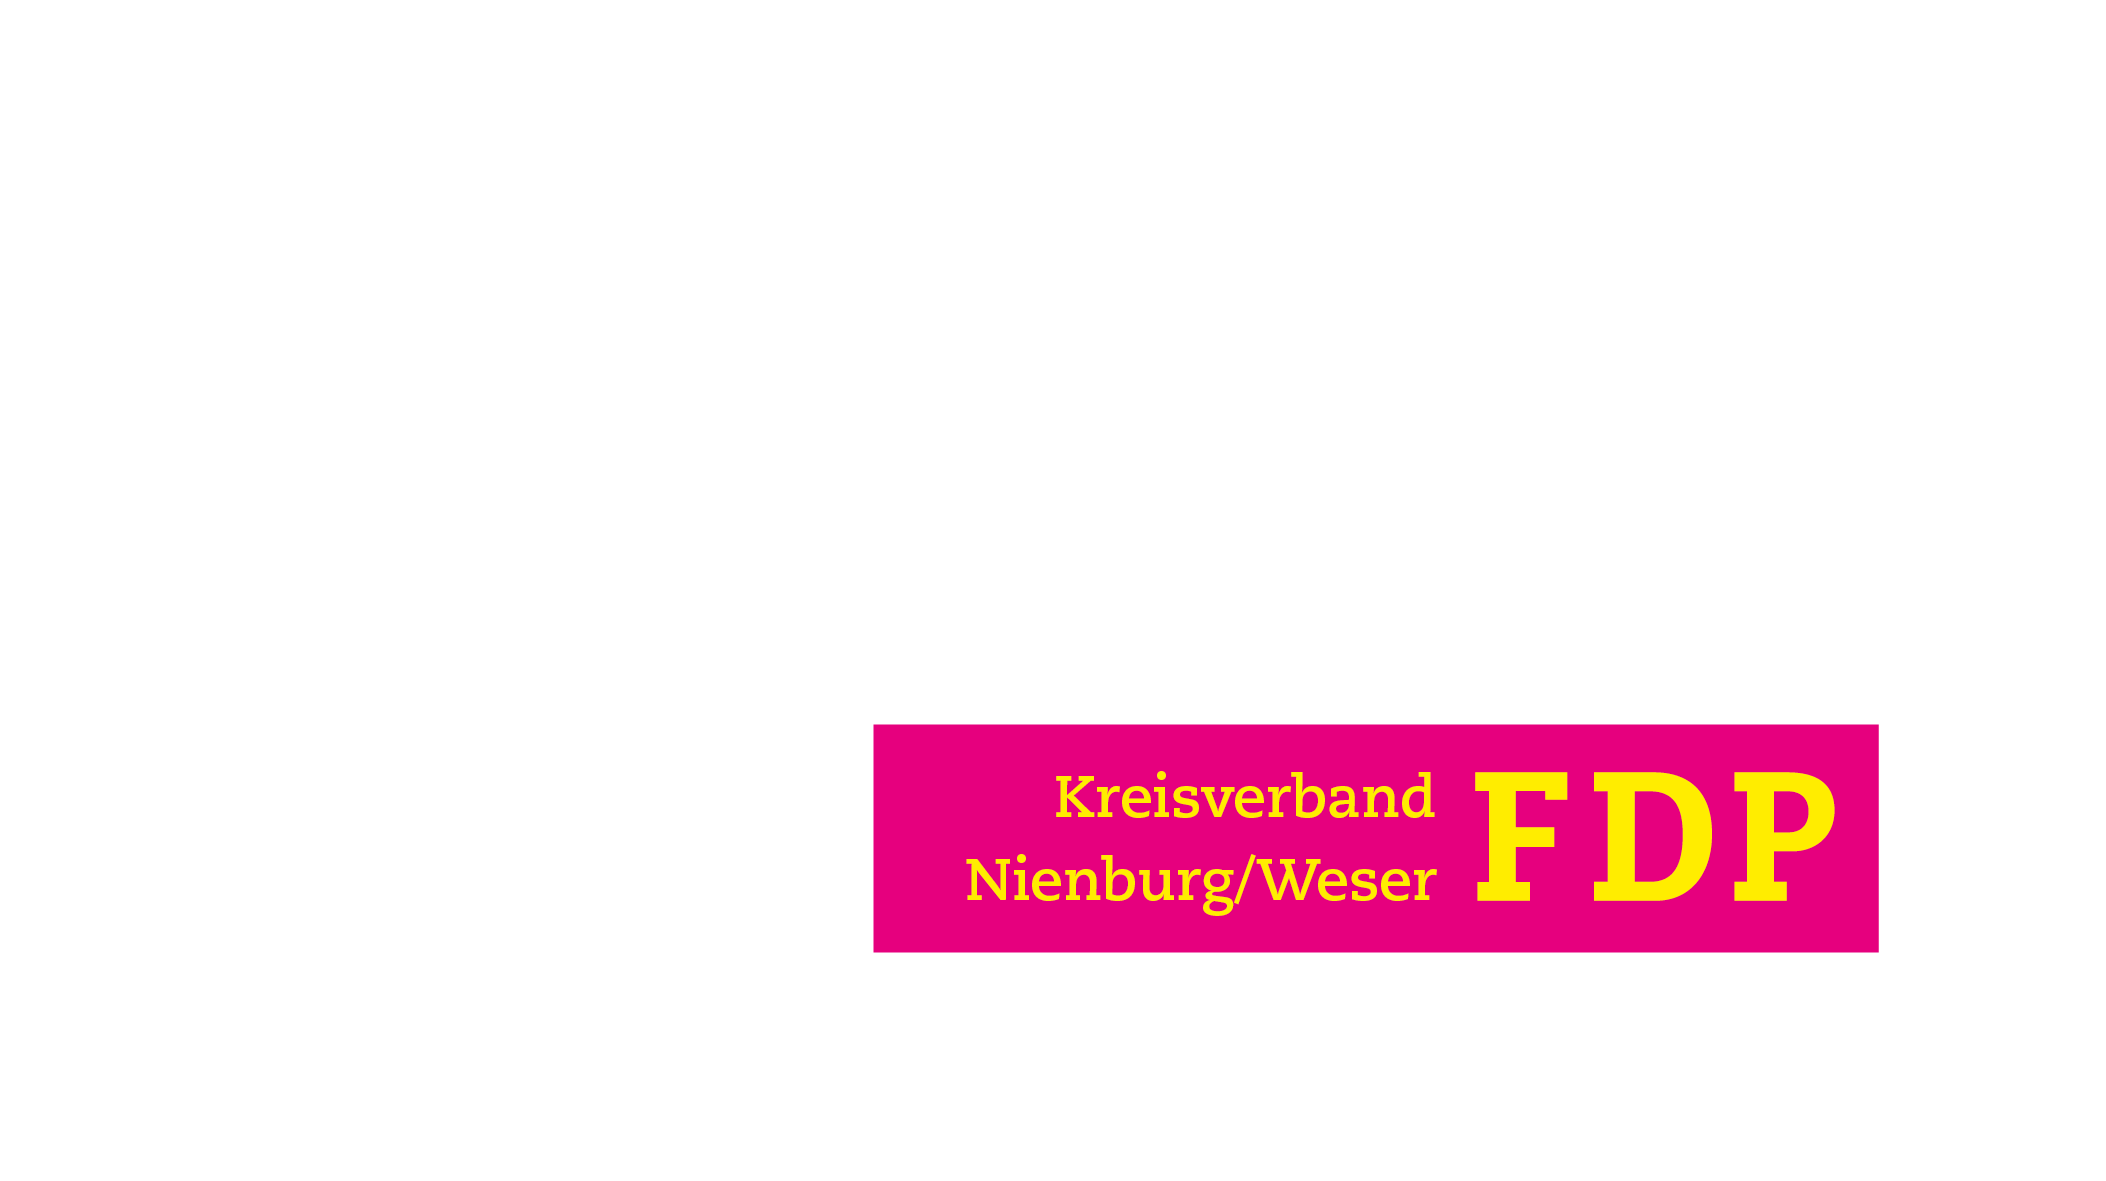 FDP Kreisverband Nienburg/Weser